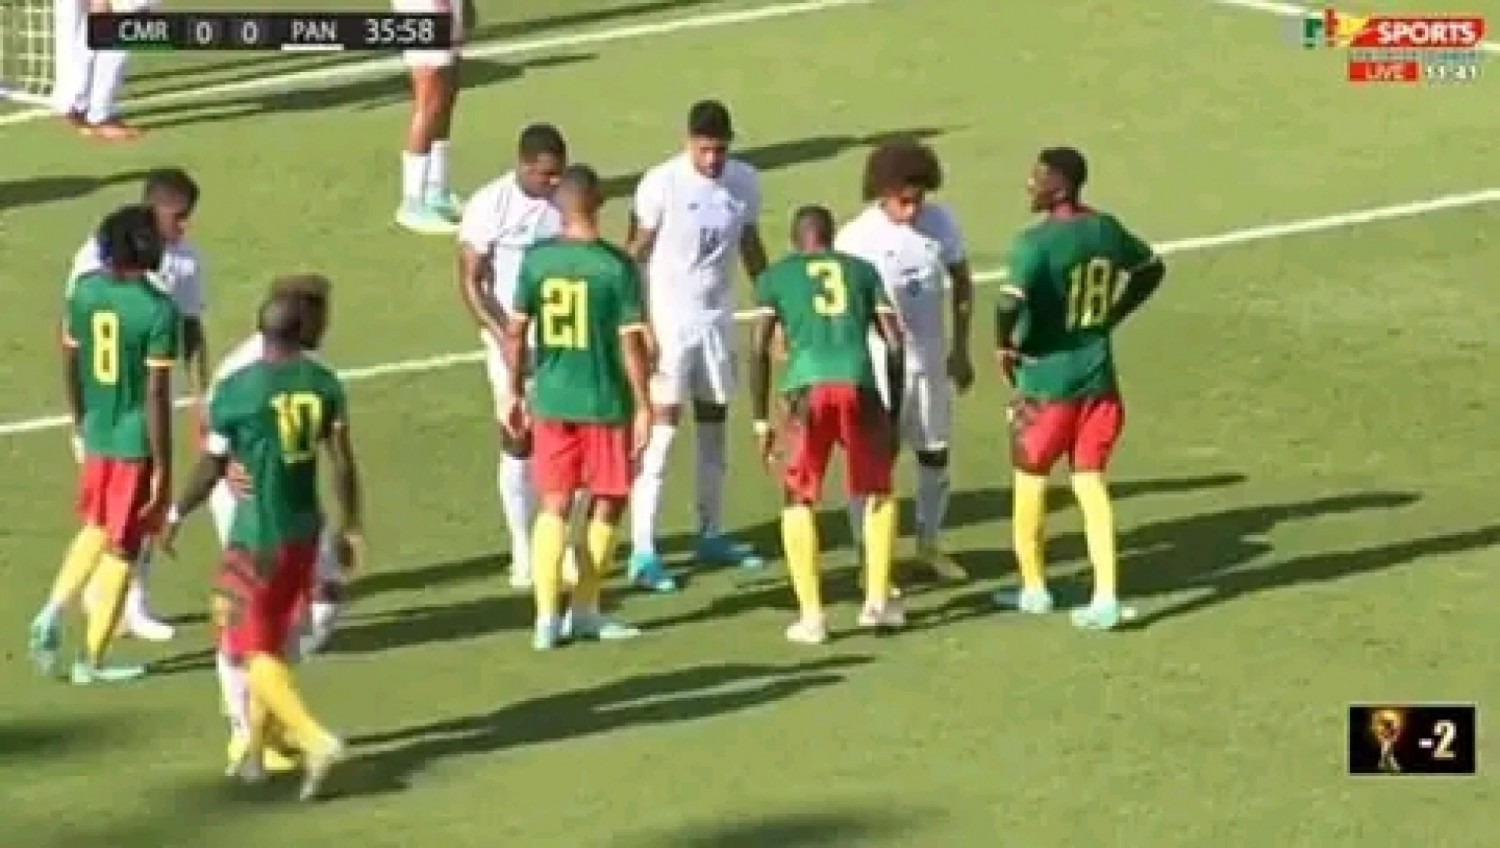 Cameroun : En route pour Qatar 2022, 4 matchs amicaux pas de victoire pour les lions indomptables